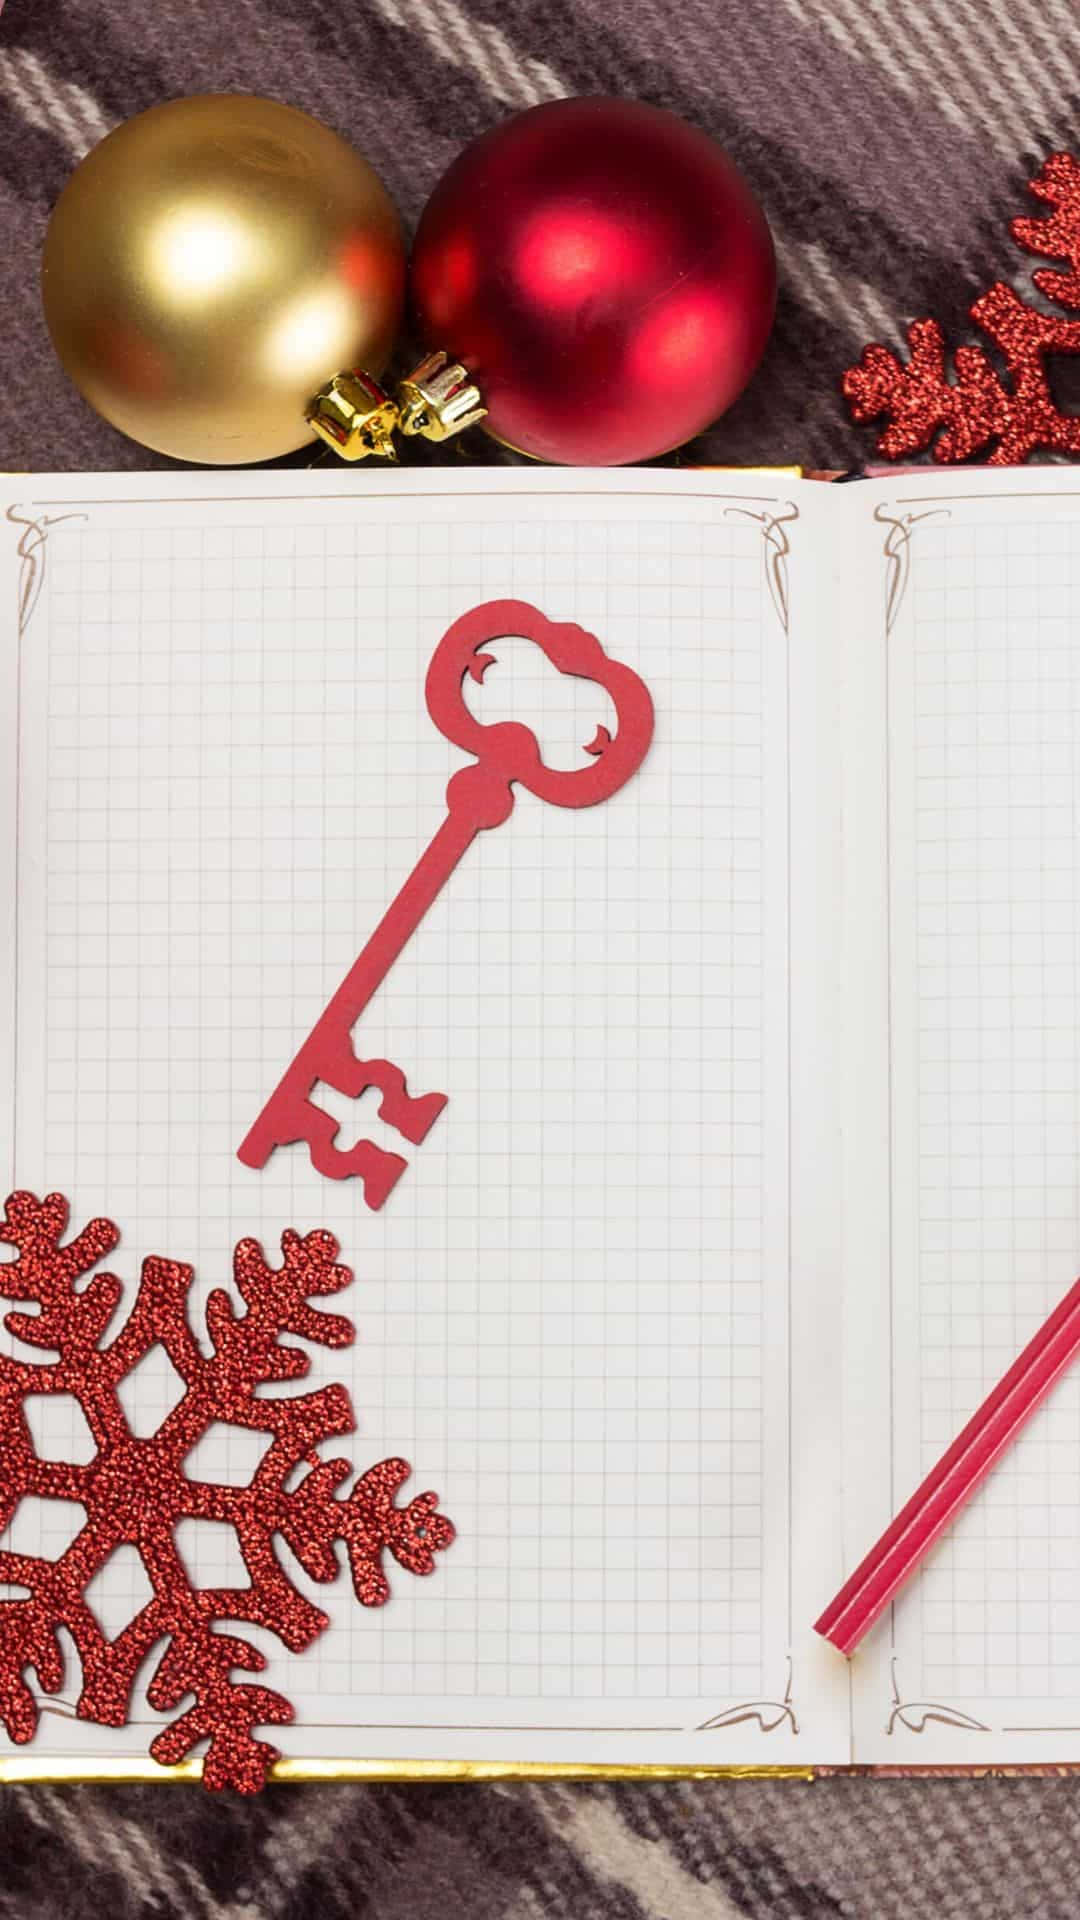 Et notatbog med nøgle og snefnug på det.